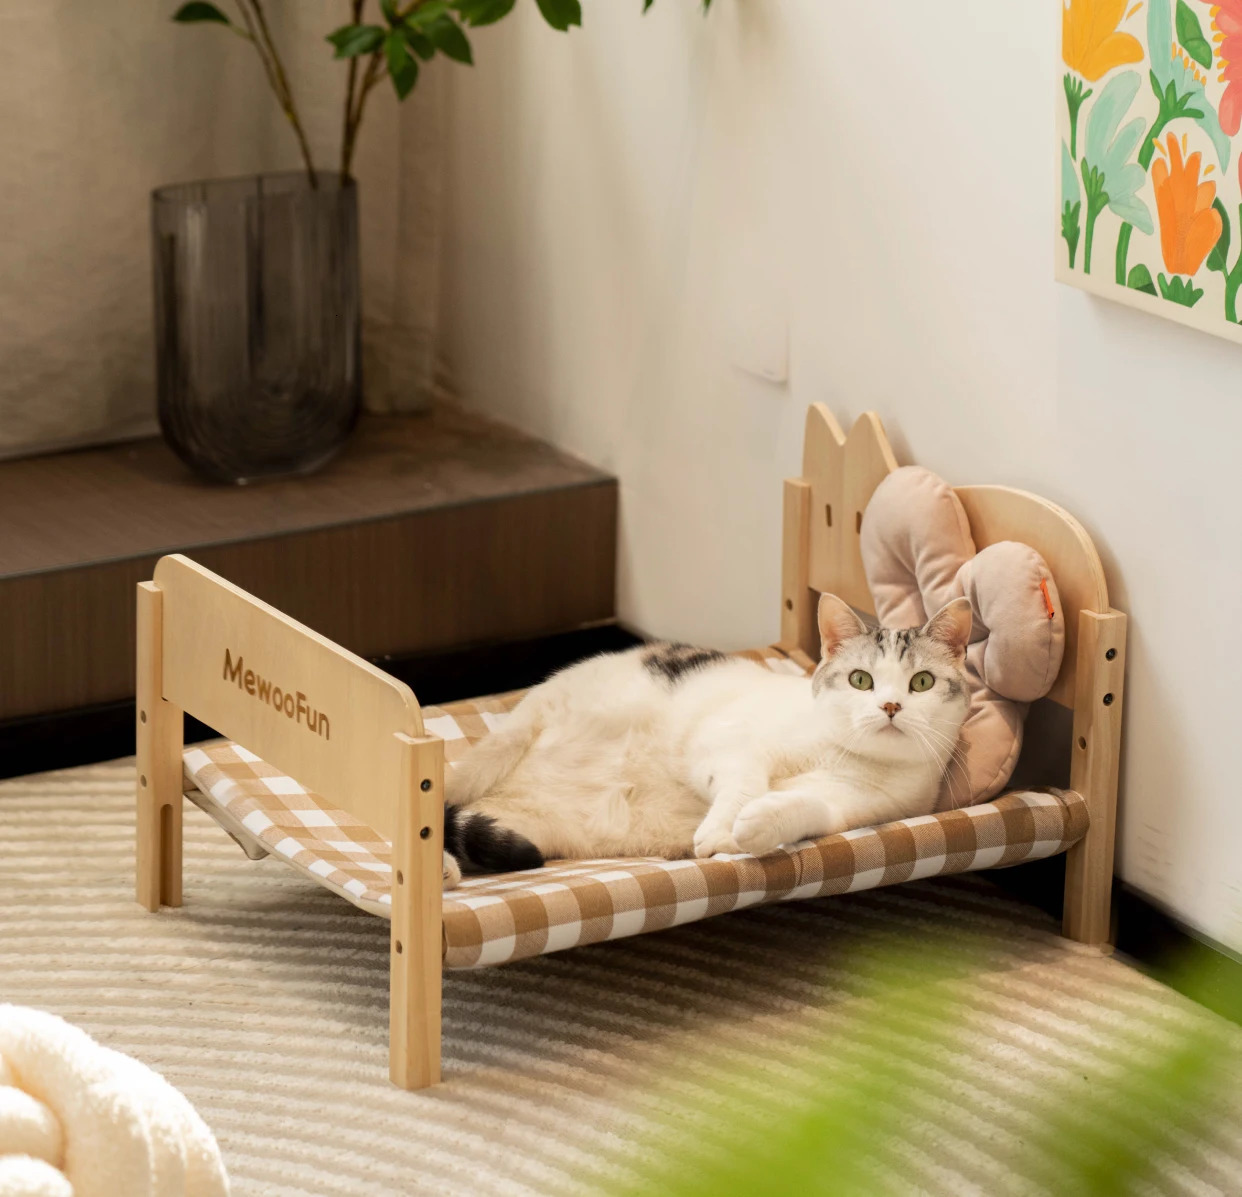 Zwinger Stifte MEWOOFUN Stabiles Katzenbett aus Holz, Sofa, atmungsaktives Segeltuch, abnehmbare Couch für Hunde für Katzen und kleine Hunde im Sommer 231206